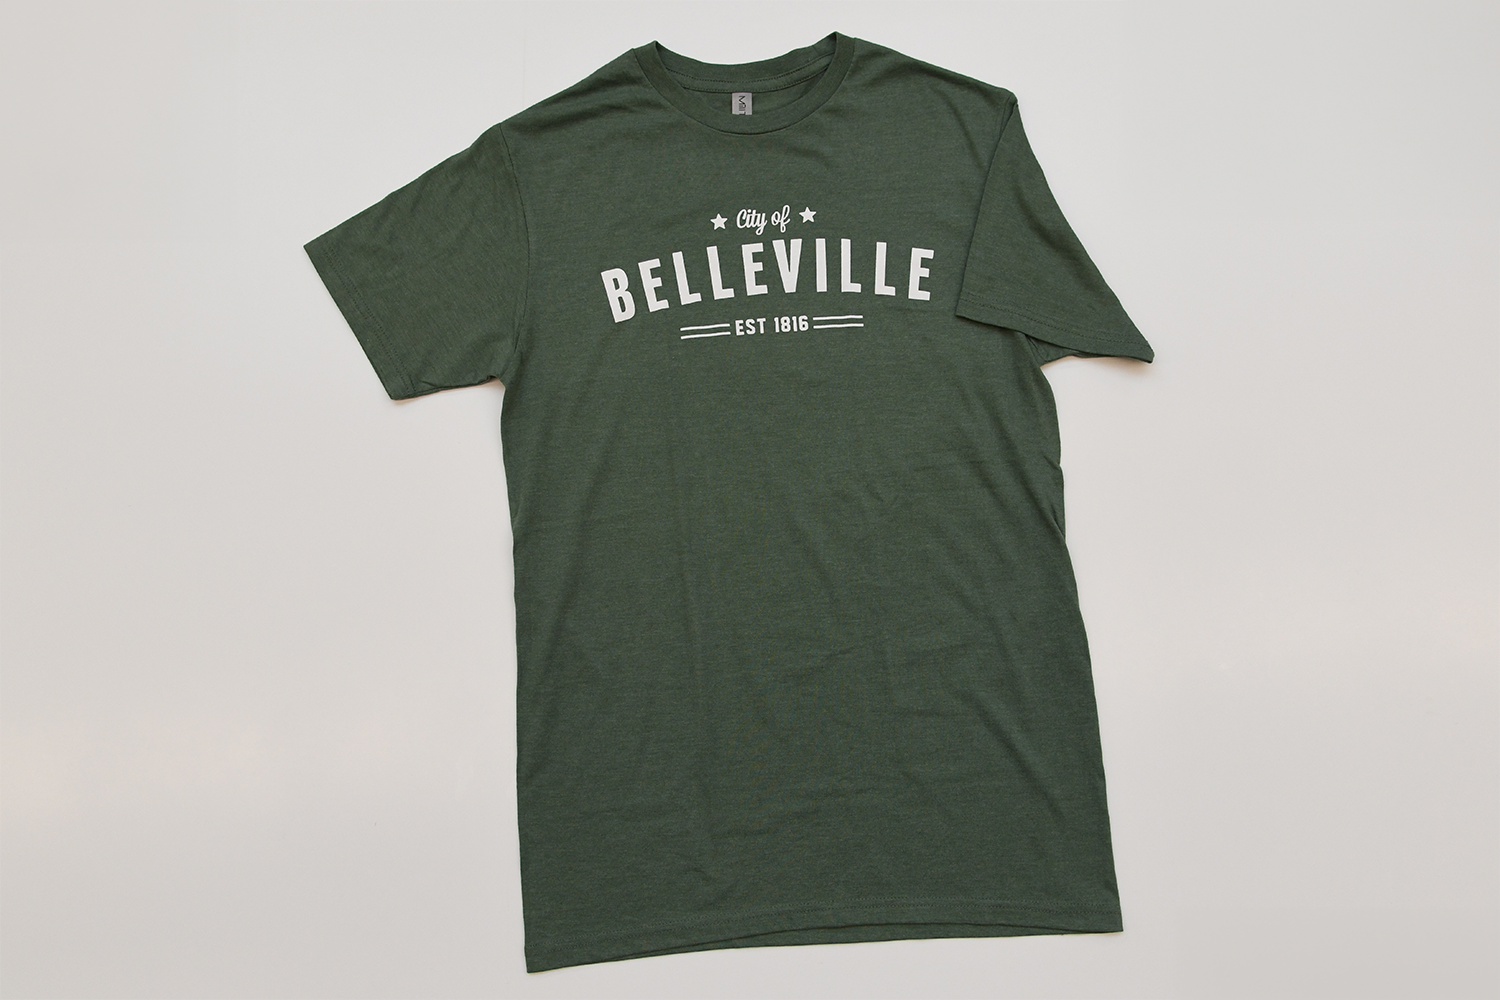 Green City of Belleville t-shirt.